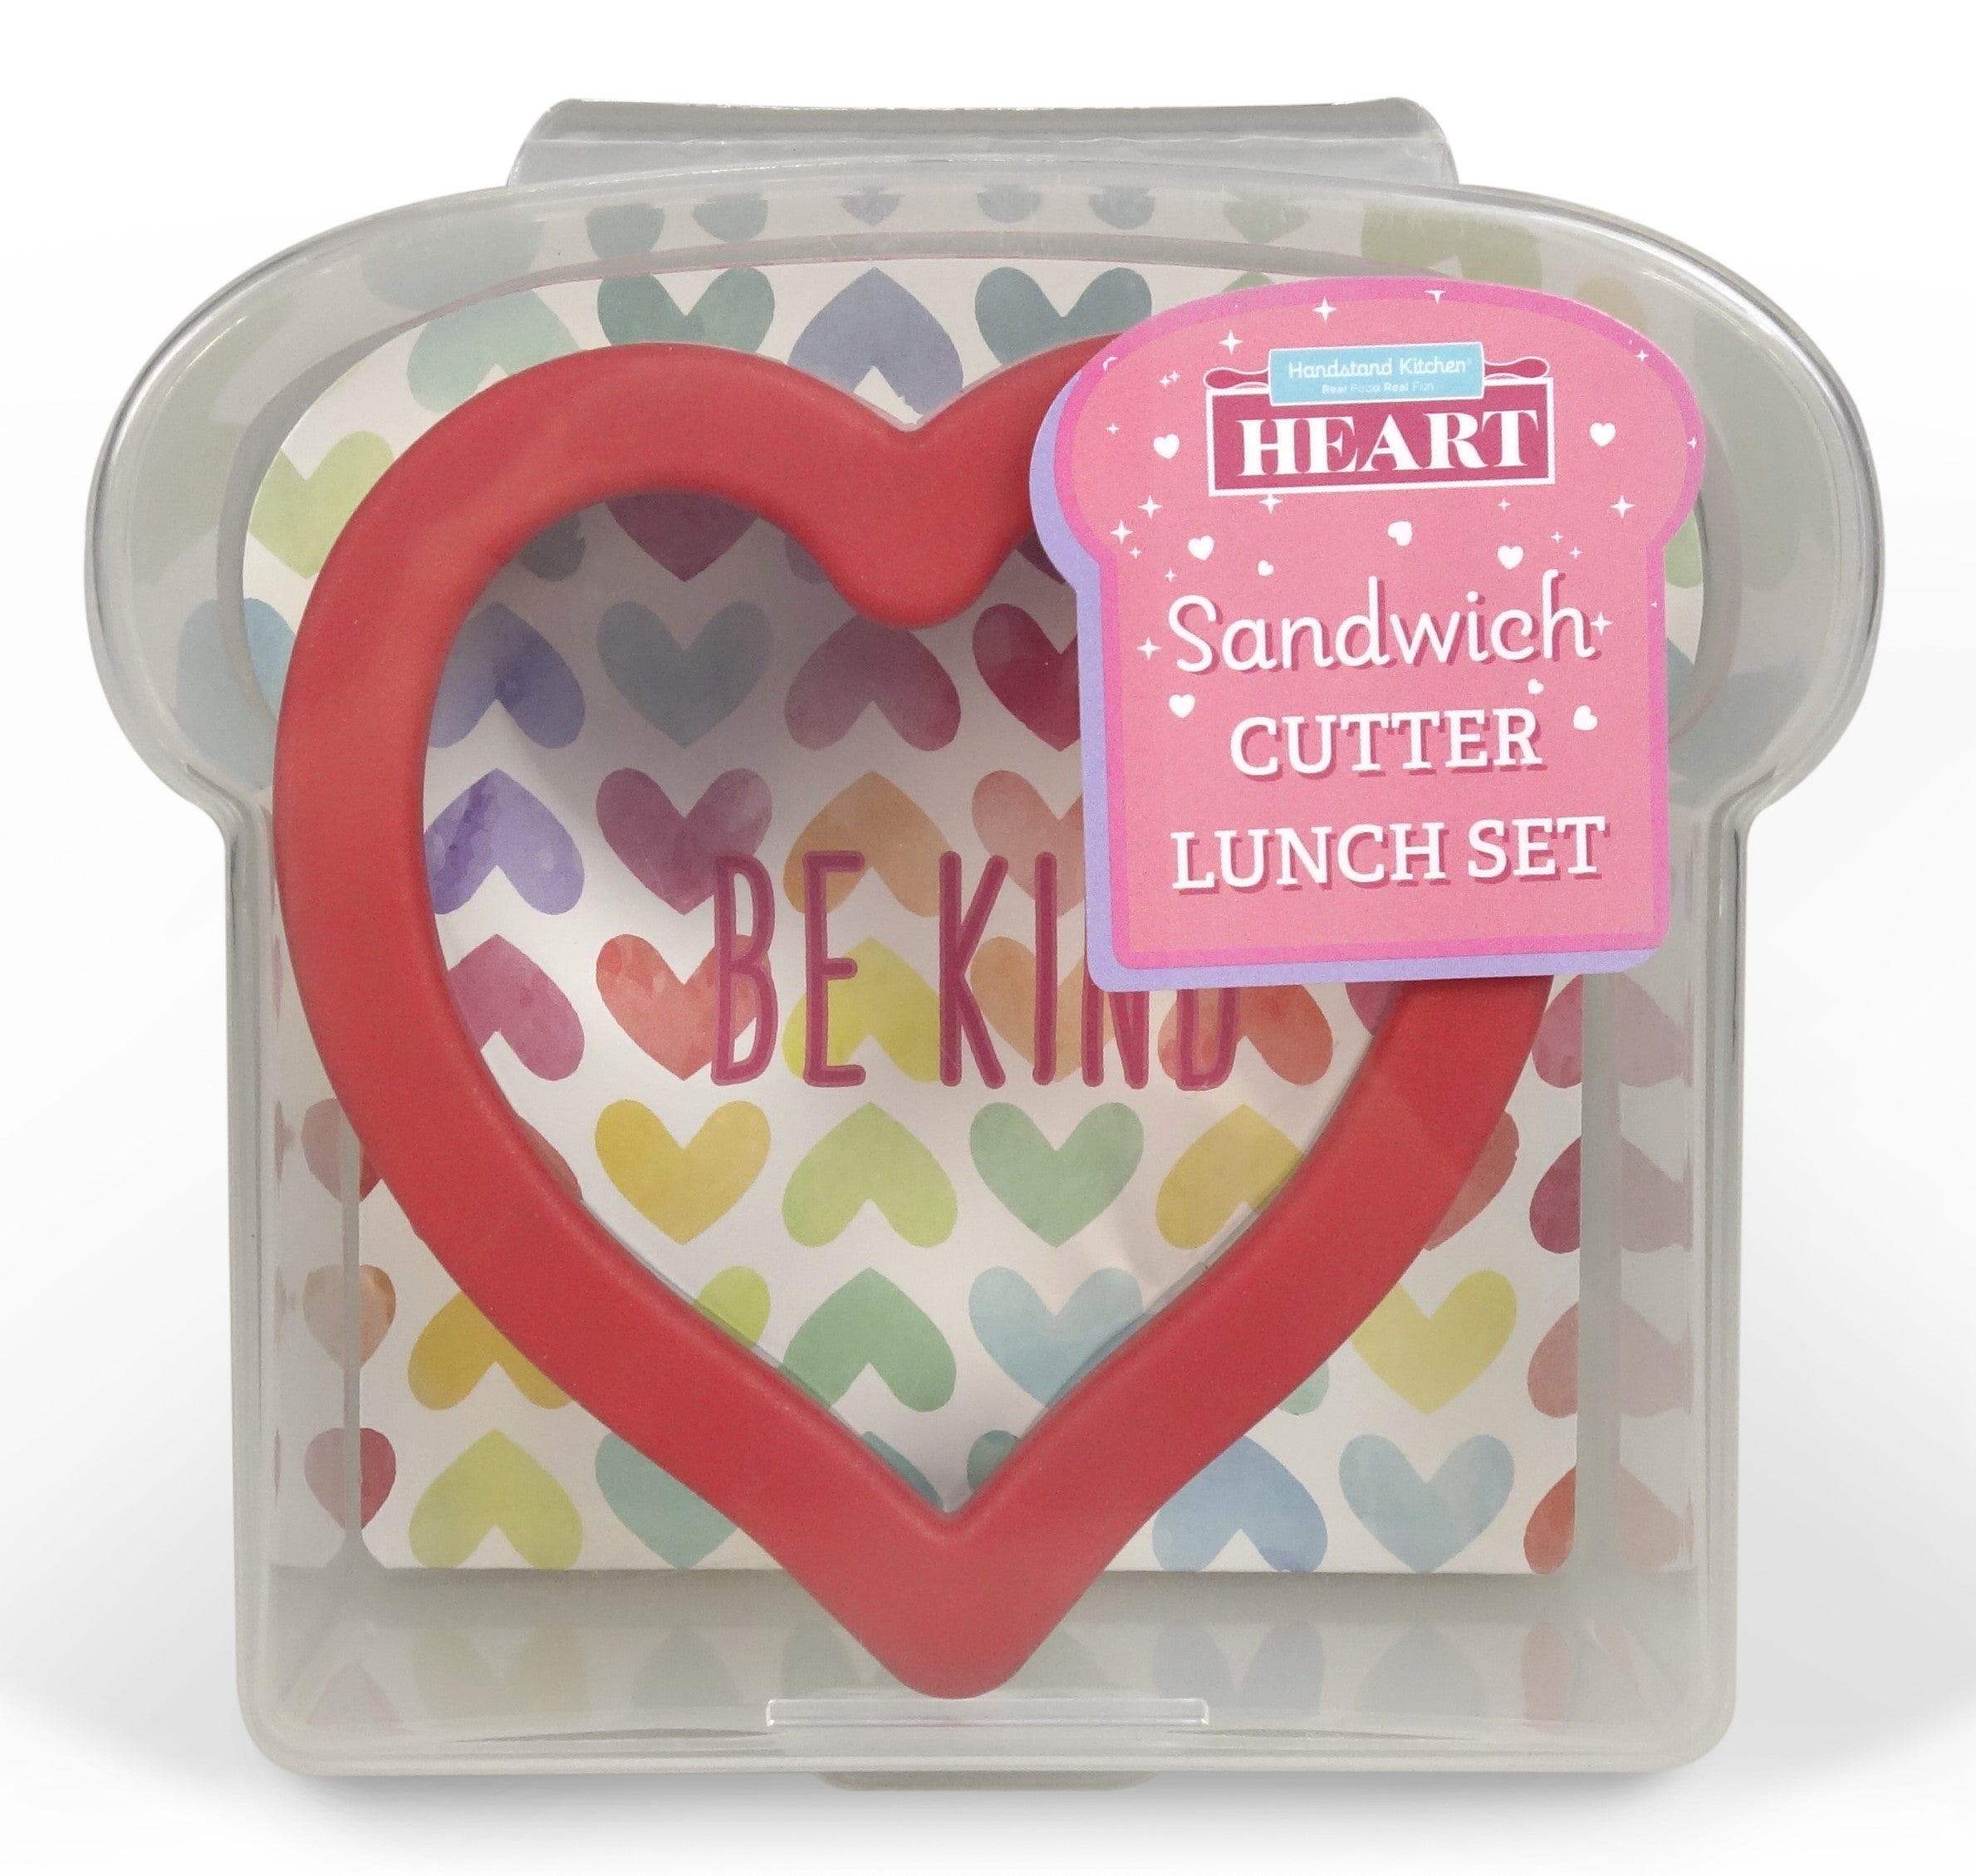 Heart Sandwich Cutter Lunch Set